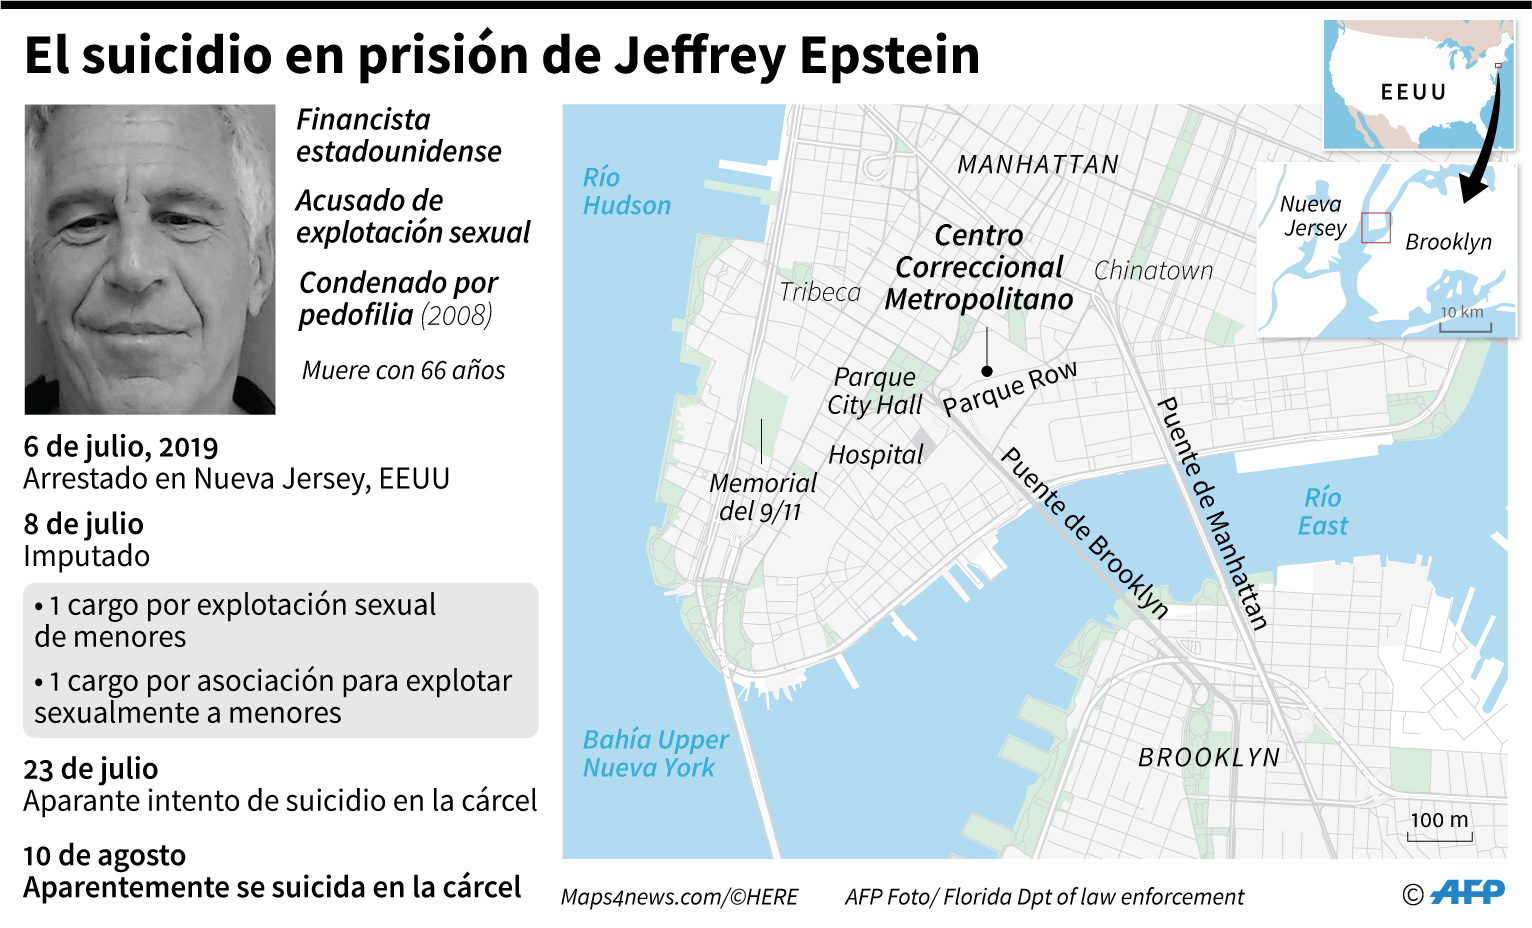 Mapa de Manhattan y perfil del millonario estadounidense Jeffrey Epstein, muerto en la cárcel por suicidio y acusado de explotación de menores (AFP)